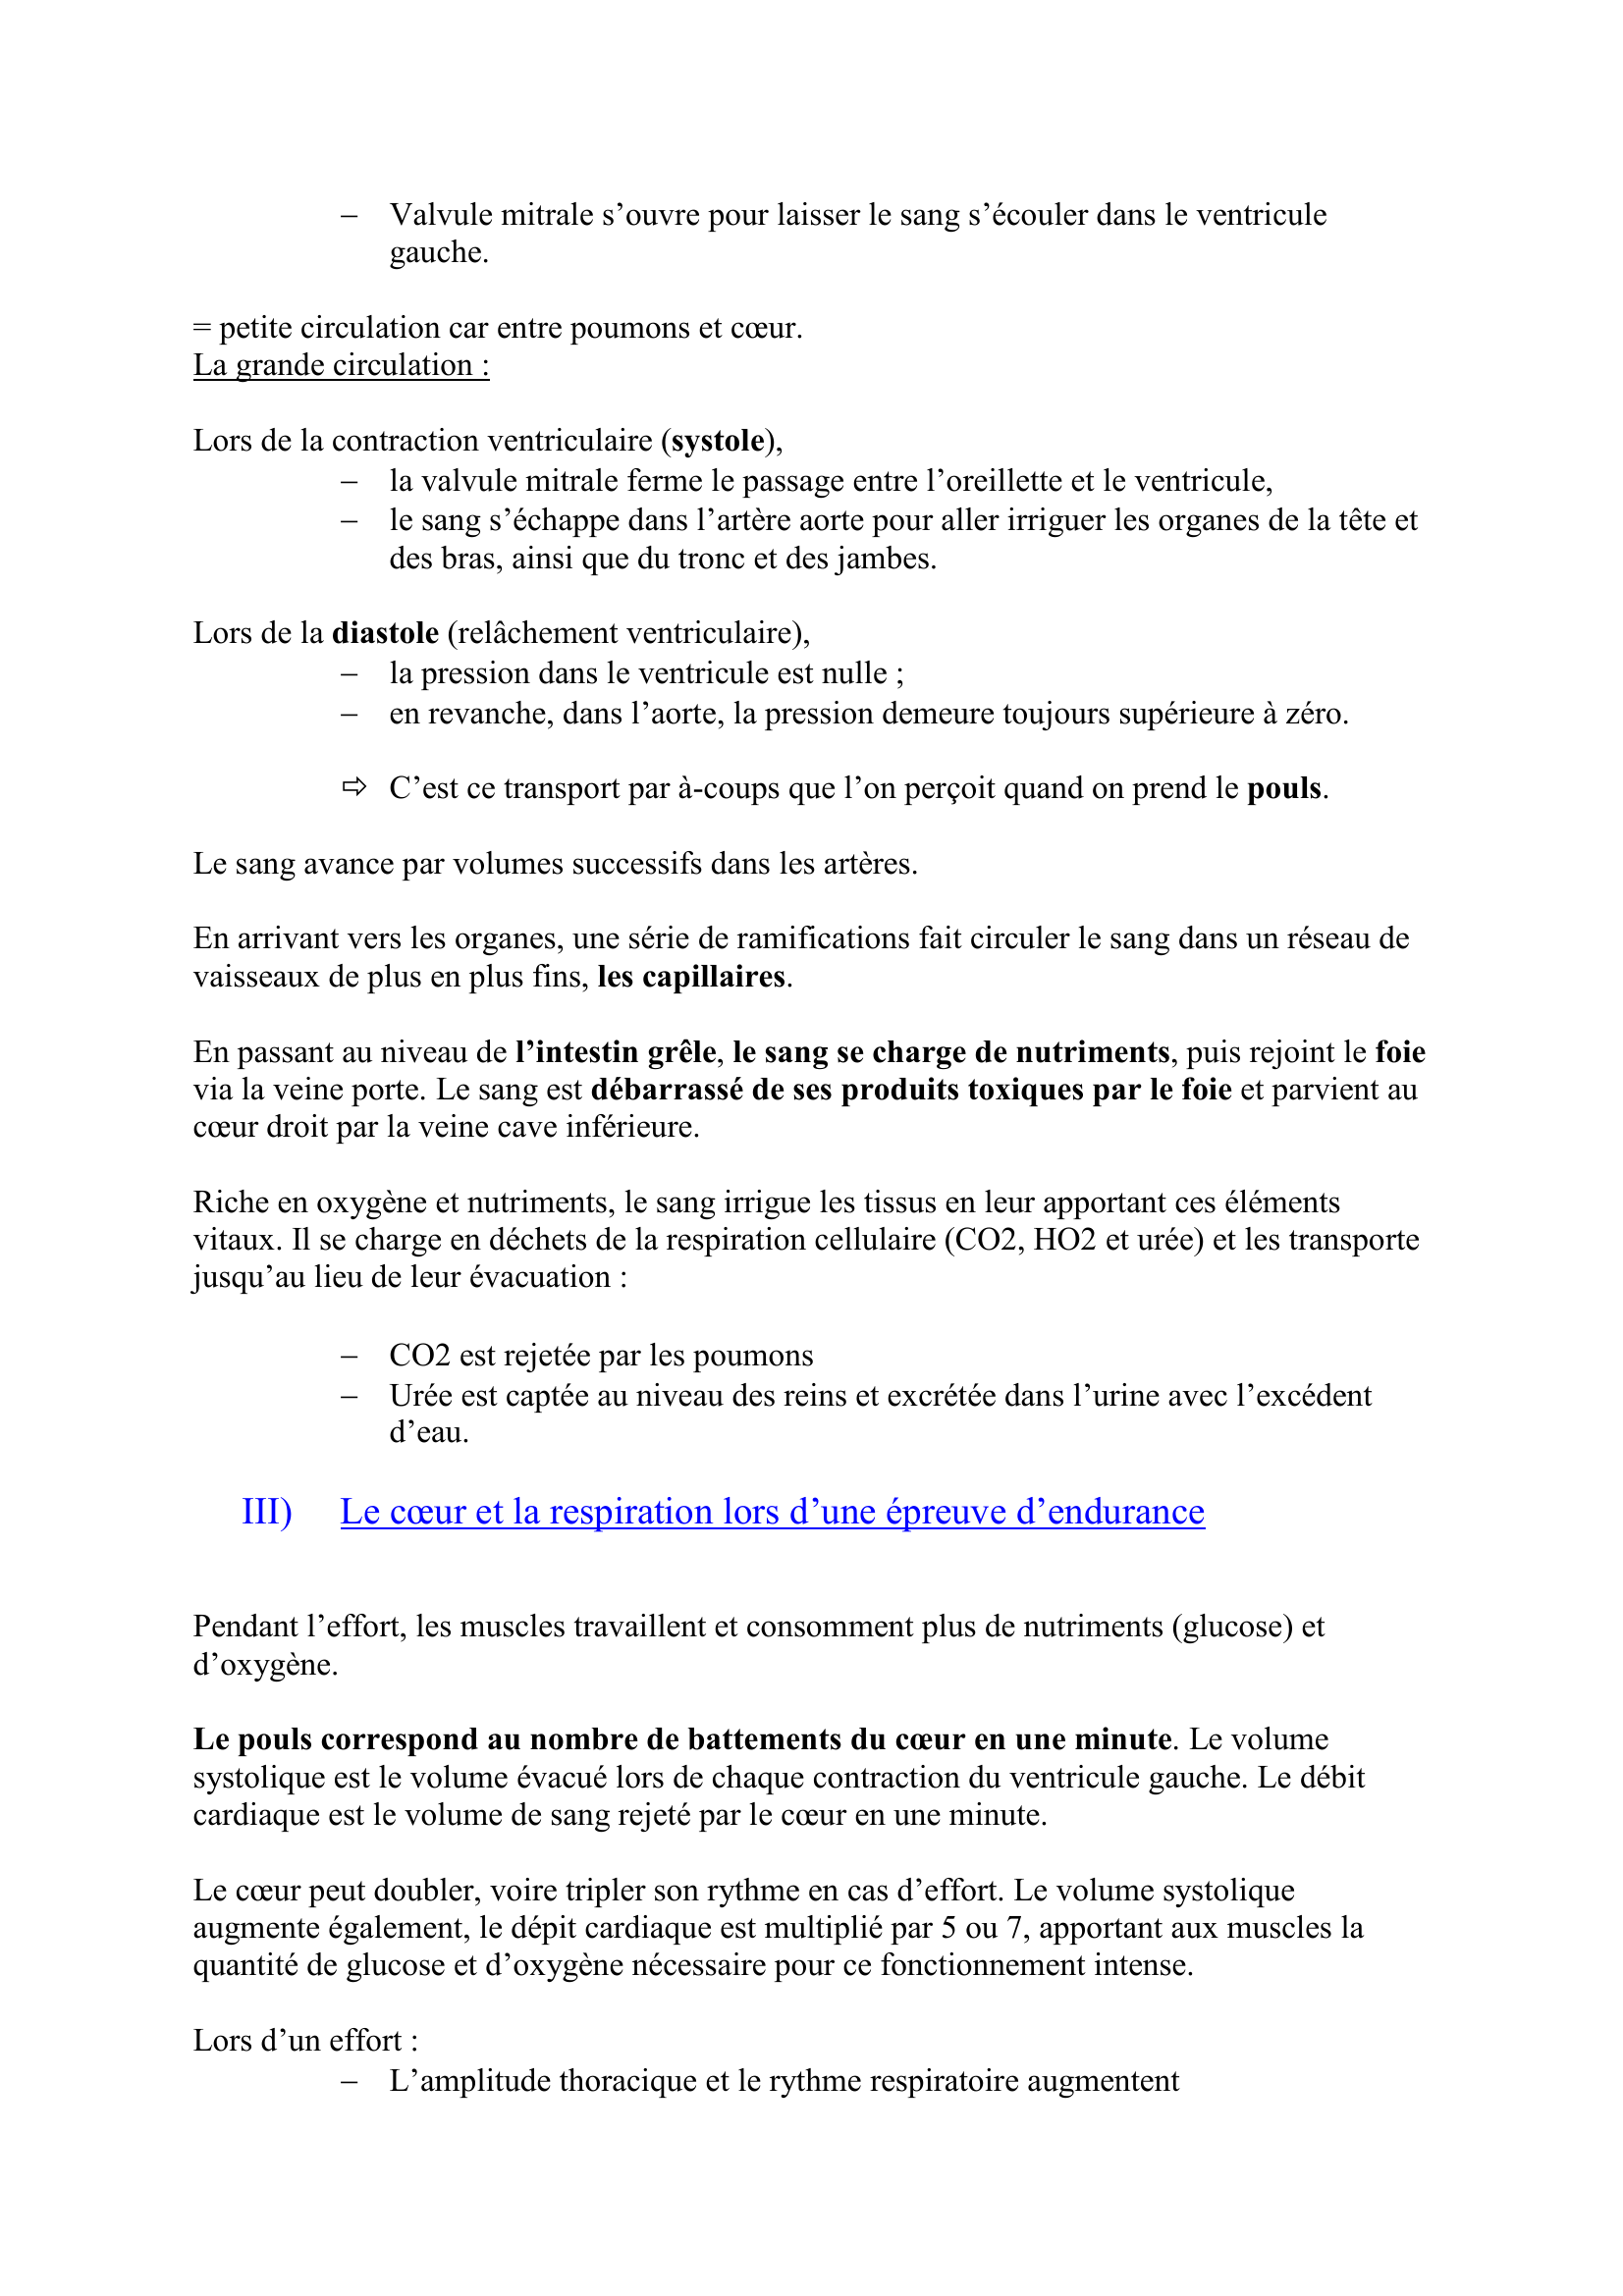 Prévisualisation du document Le vivant : Fonctions de nutrition :
La circulation du sang
Synthèse construite par Sylvain
sylvain.